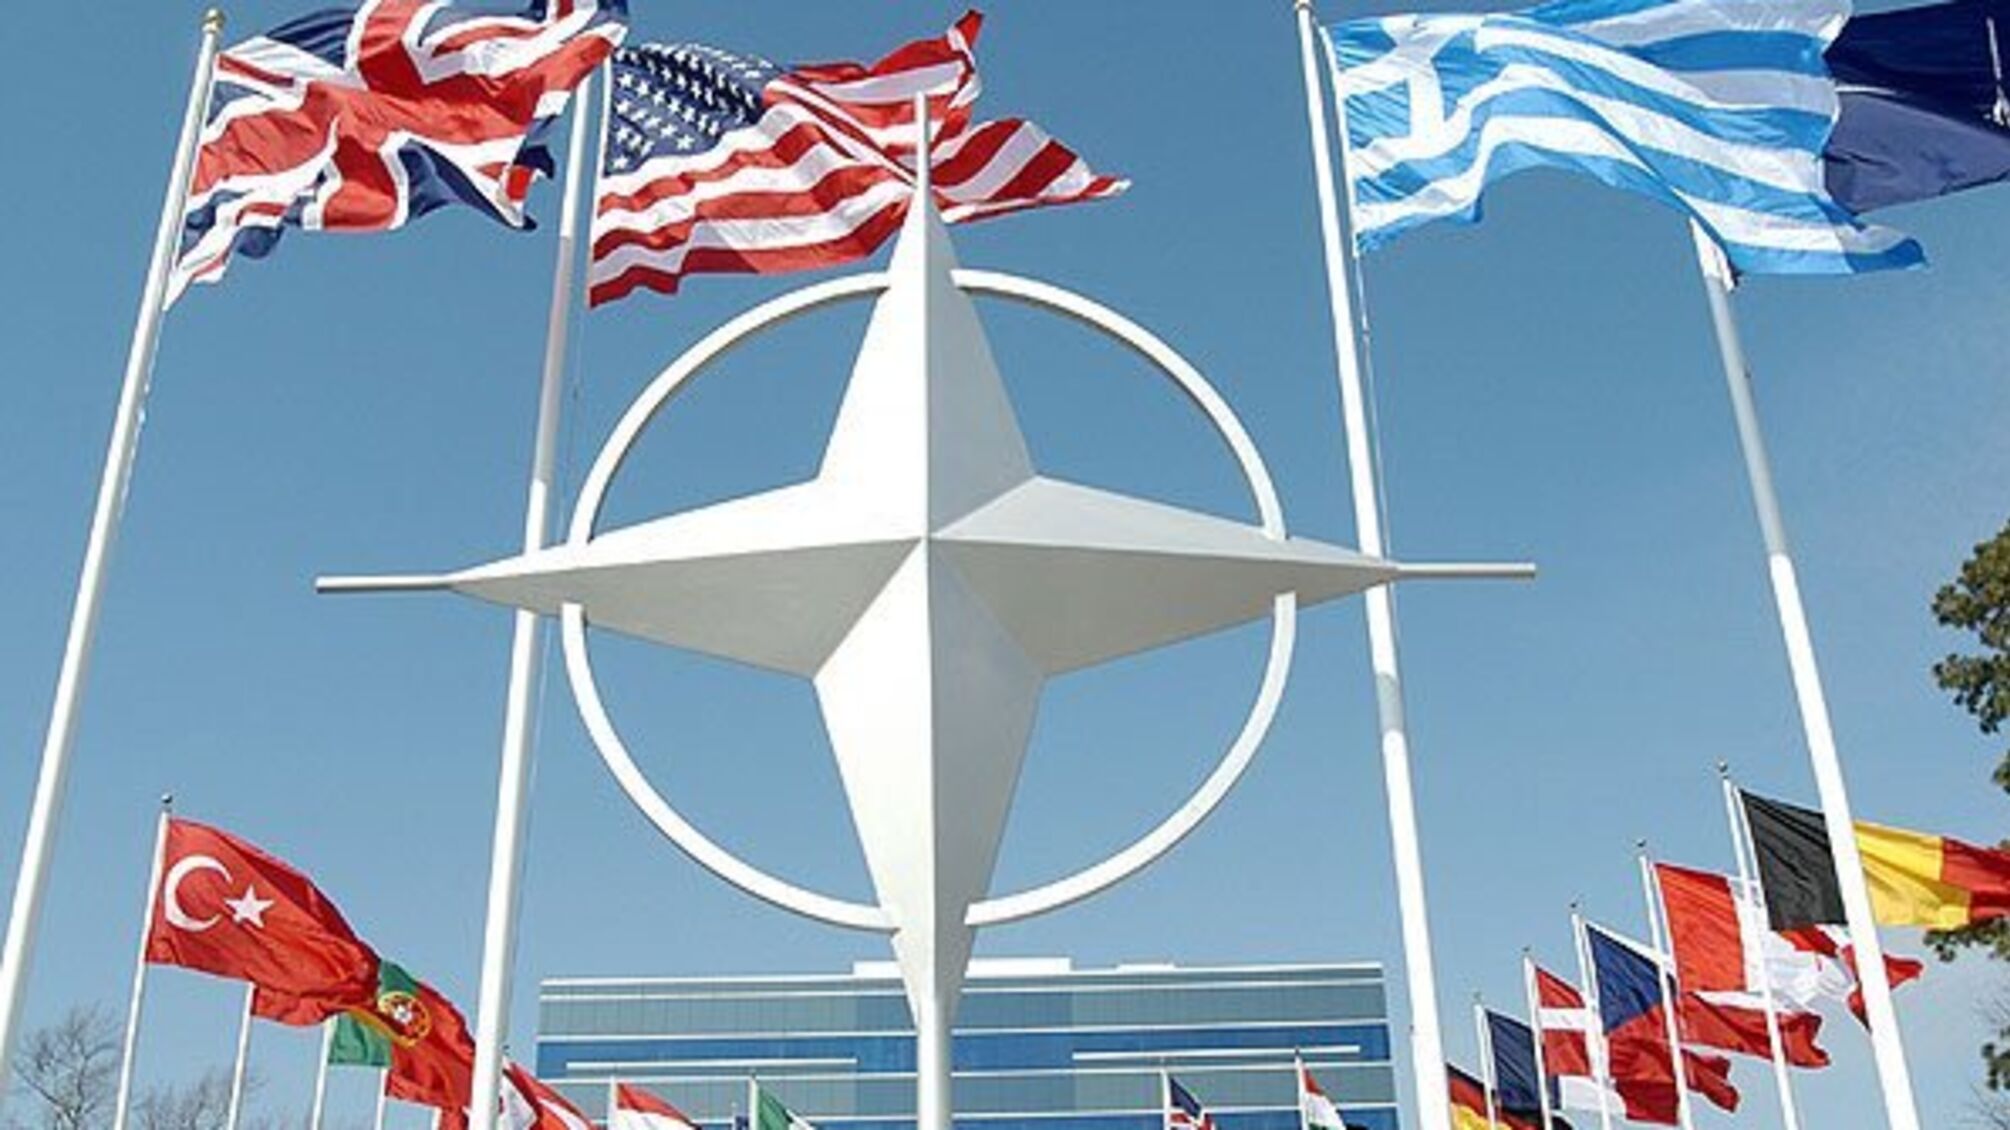 Під шефством НАТО: як Альянс збирається контролювати Україну